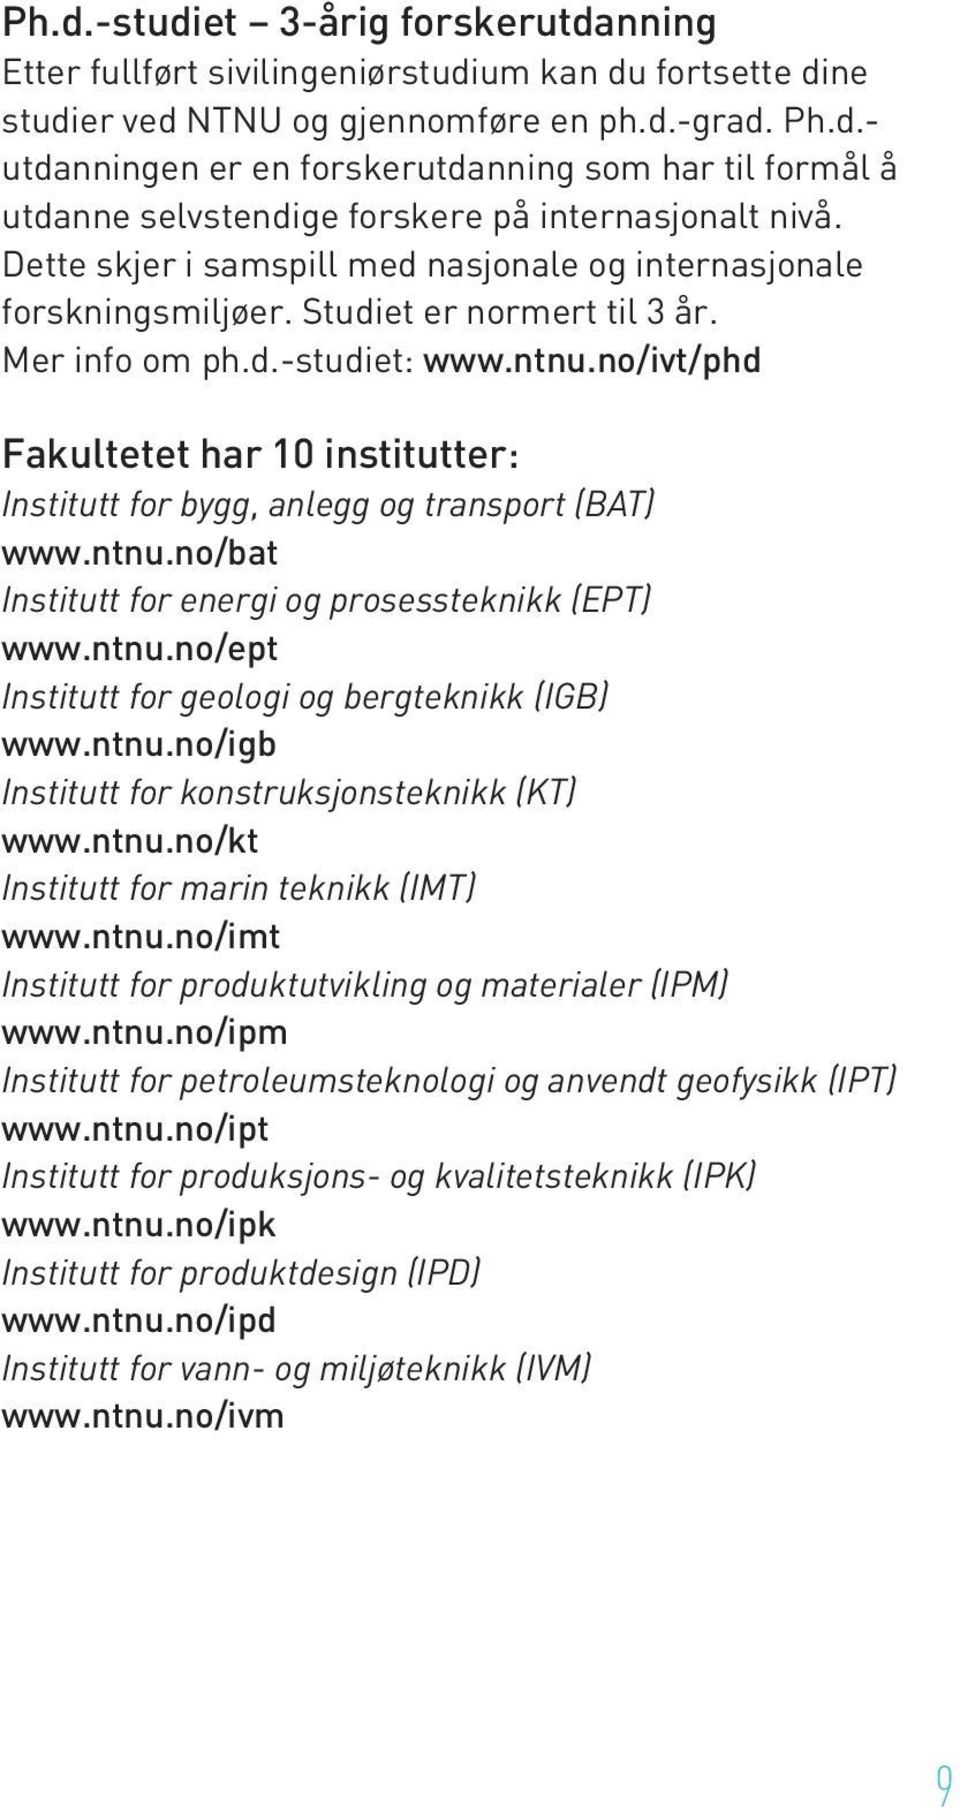 no/ivt/phd Fakultetet har 10 institutter: Institutt for bygg, anlegg og transport (BAT) www.ntnu.no/bat Institutt for energi og prosessteknikk (EPT) www.ntnu.no/ept Institutt for geologi og bergteknikk (IGB) www.